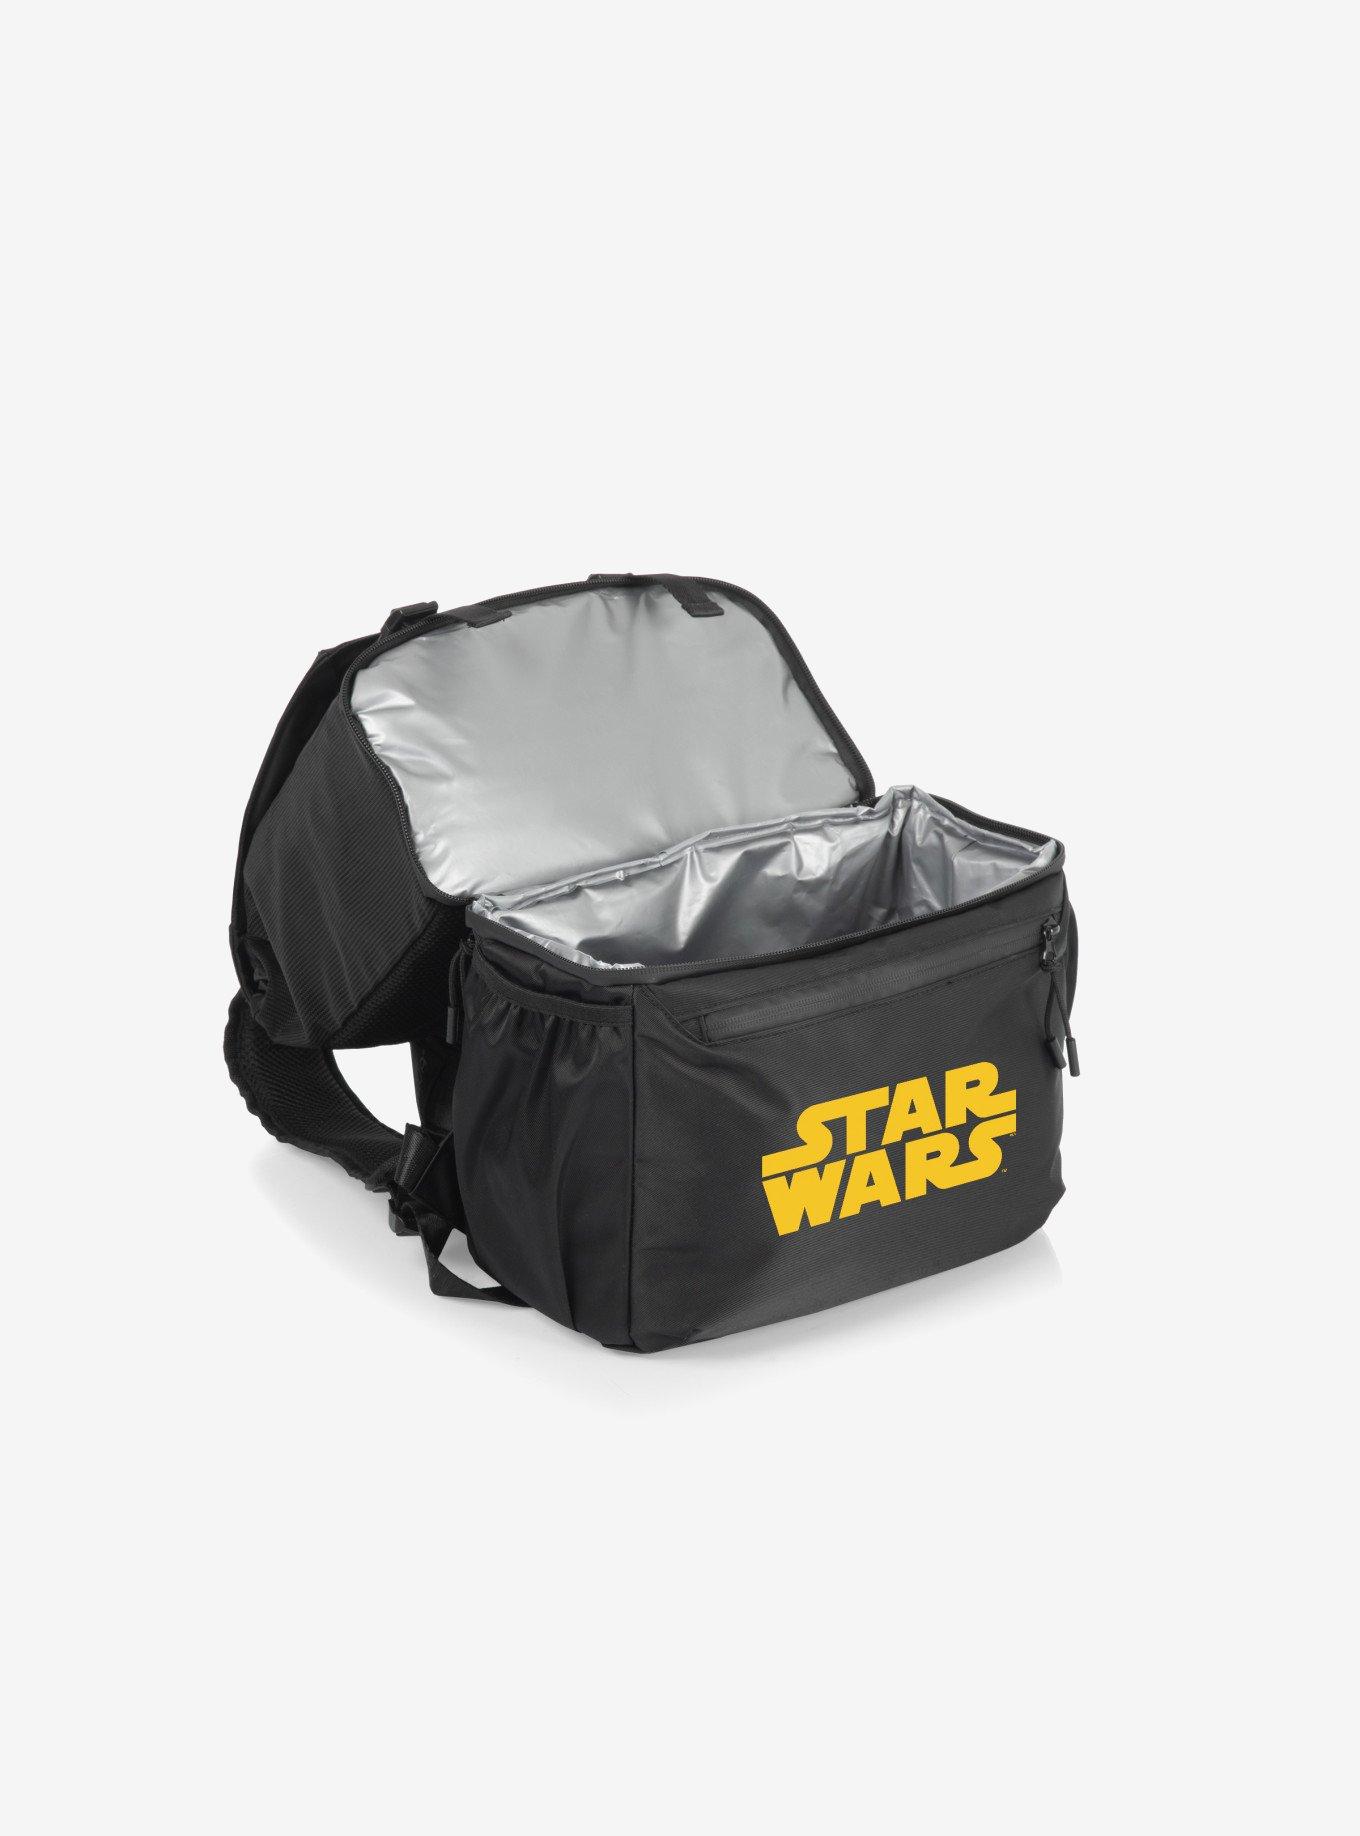 Star Wars Darth Vader Tarana Cooler Backpack